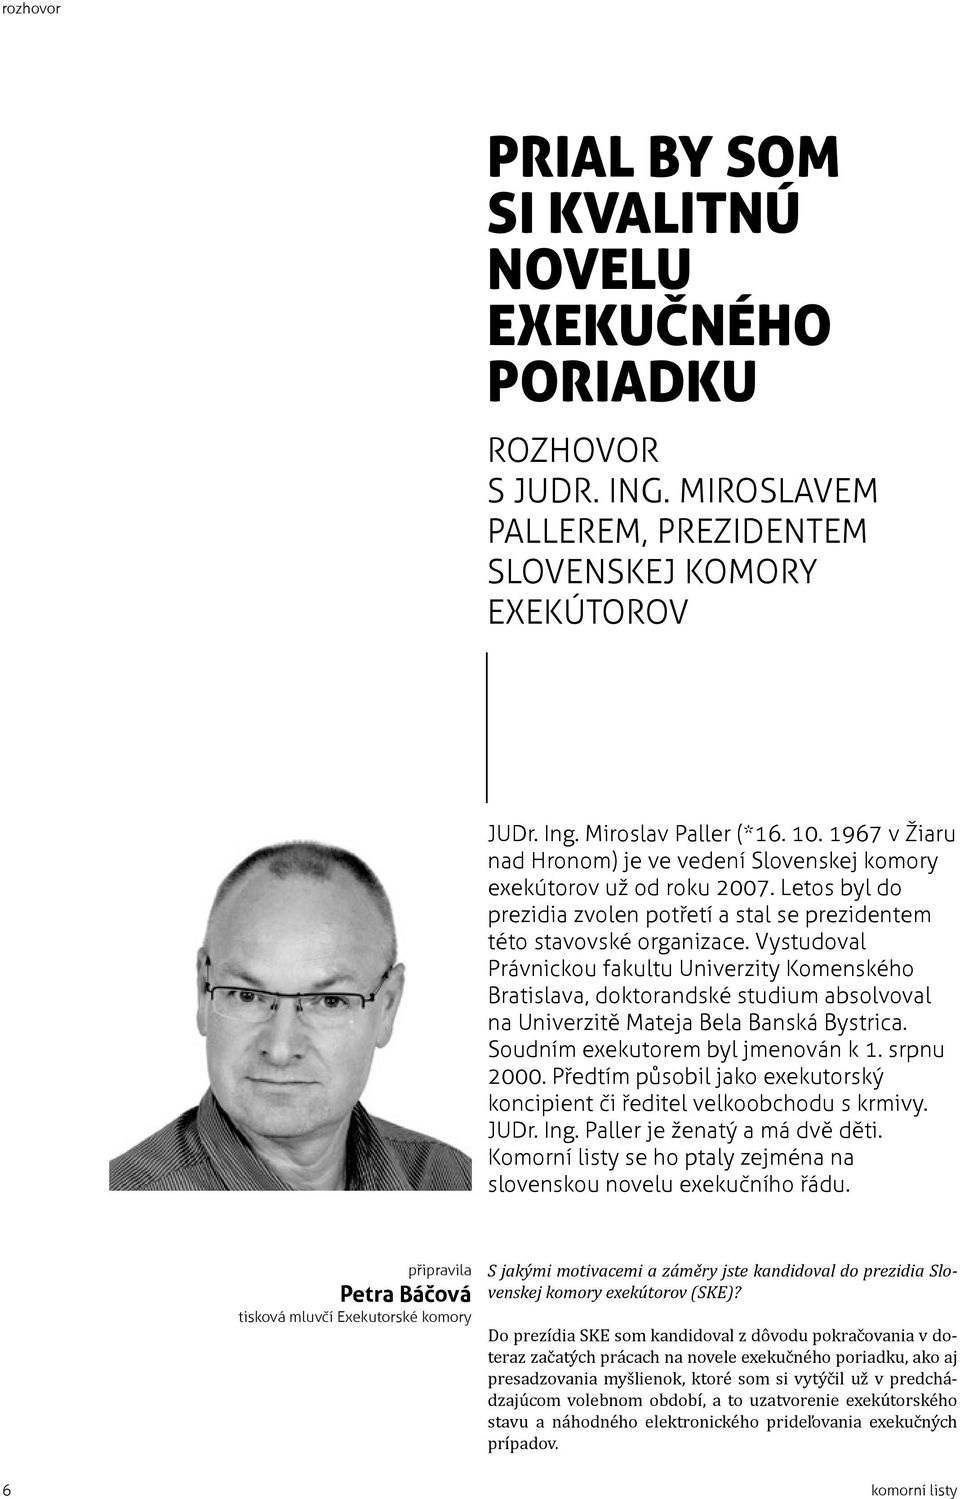 Vystudoval Právnickou fakultu Univerzity Komenského Bratislava, doktorandské studium absolvoval na Univerzitě Mateja Bela Banská Bystrica. Soudním exekutorem byl jmenován k 1. srpnu 2000.